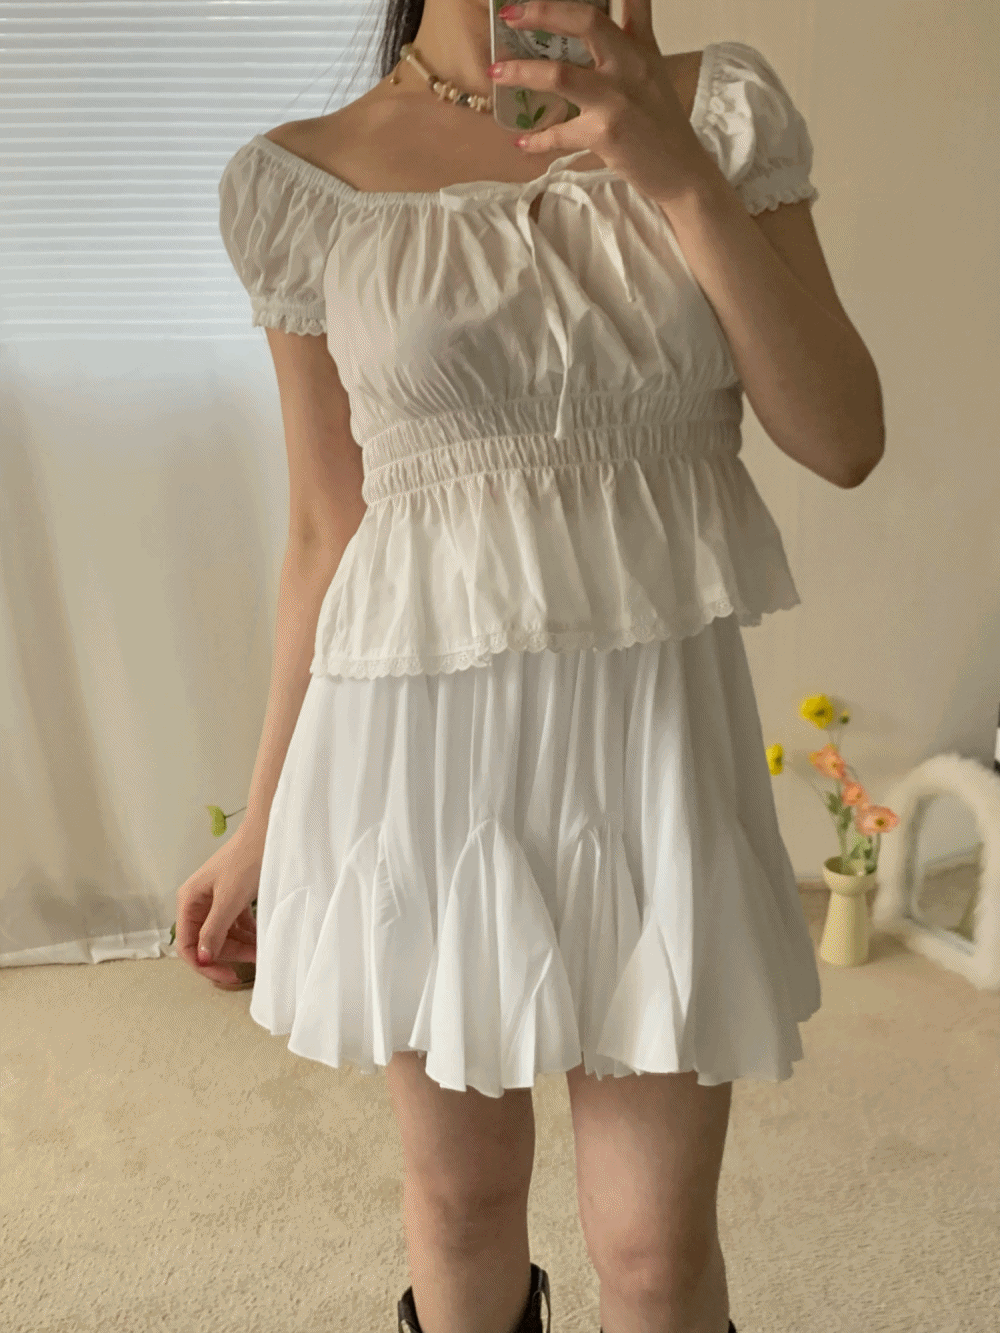 [Skirt] Hallie frill mini skirt / 2 colors